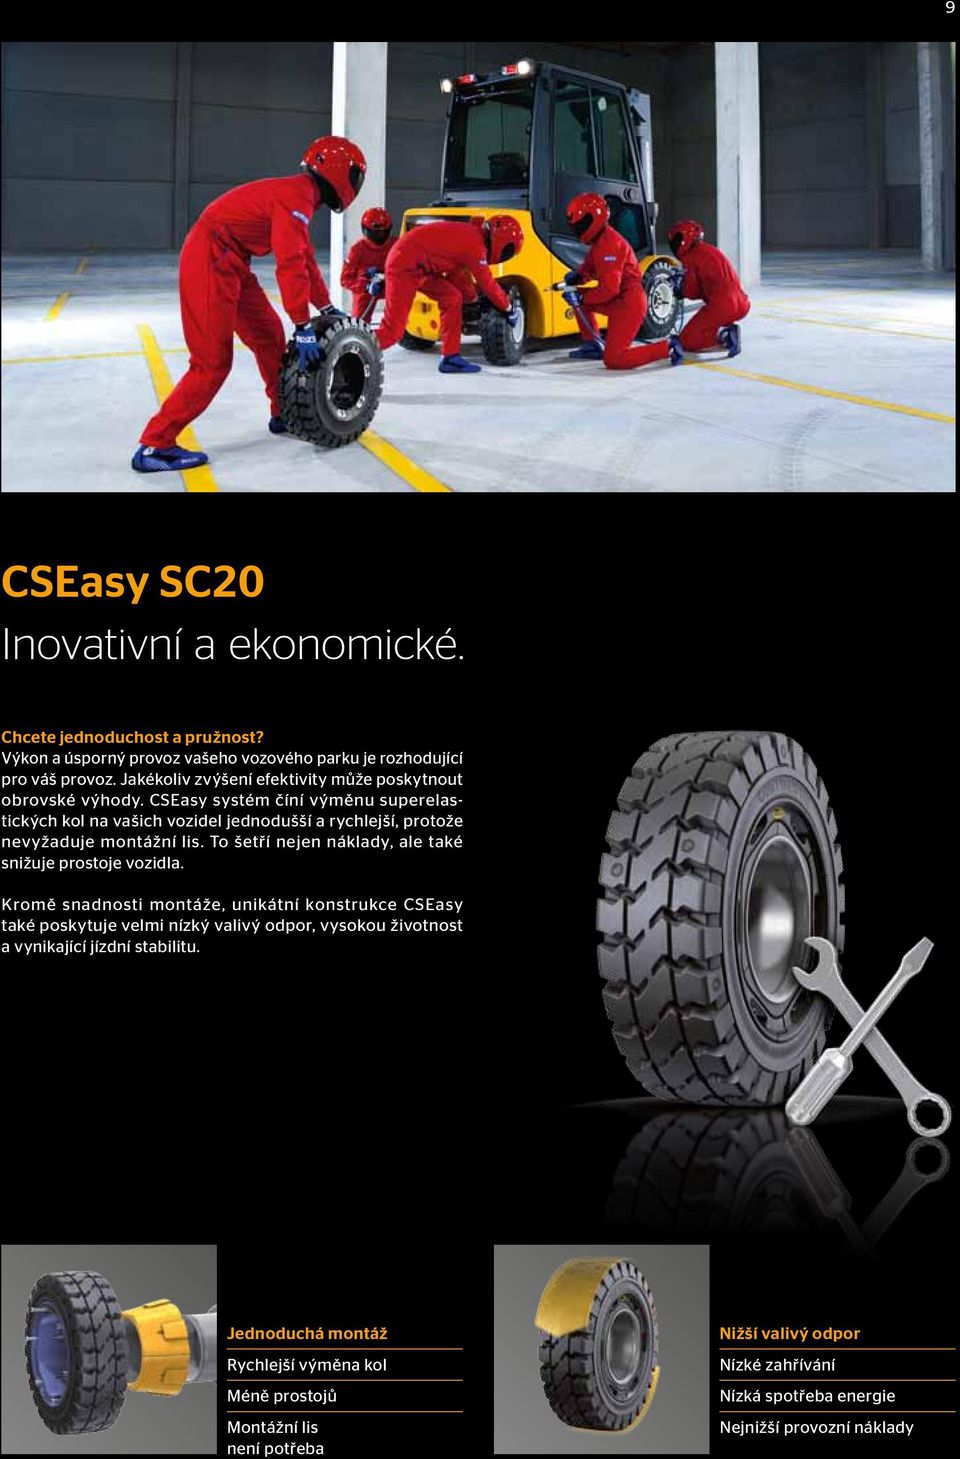 CSEasy systém číní výměnu superelastických kol na vašich vozidel jednodušší a rychlejší, protože nevyžaduje montážní lis.